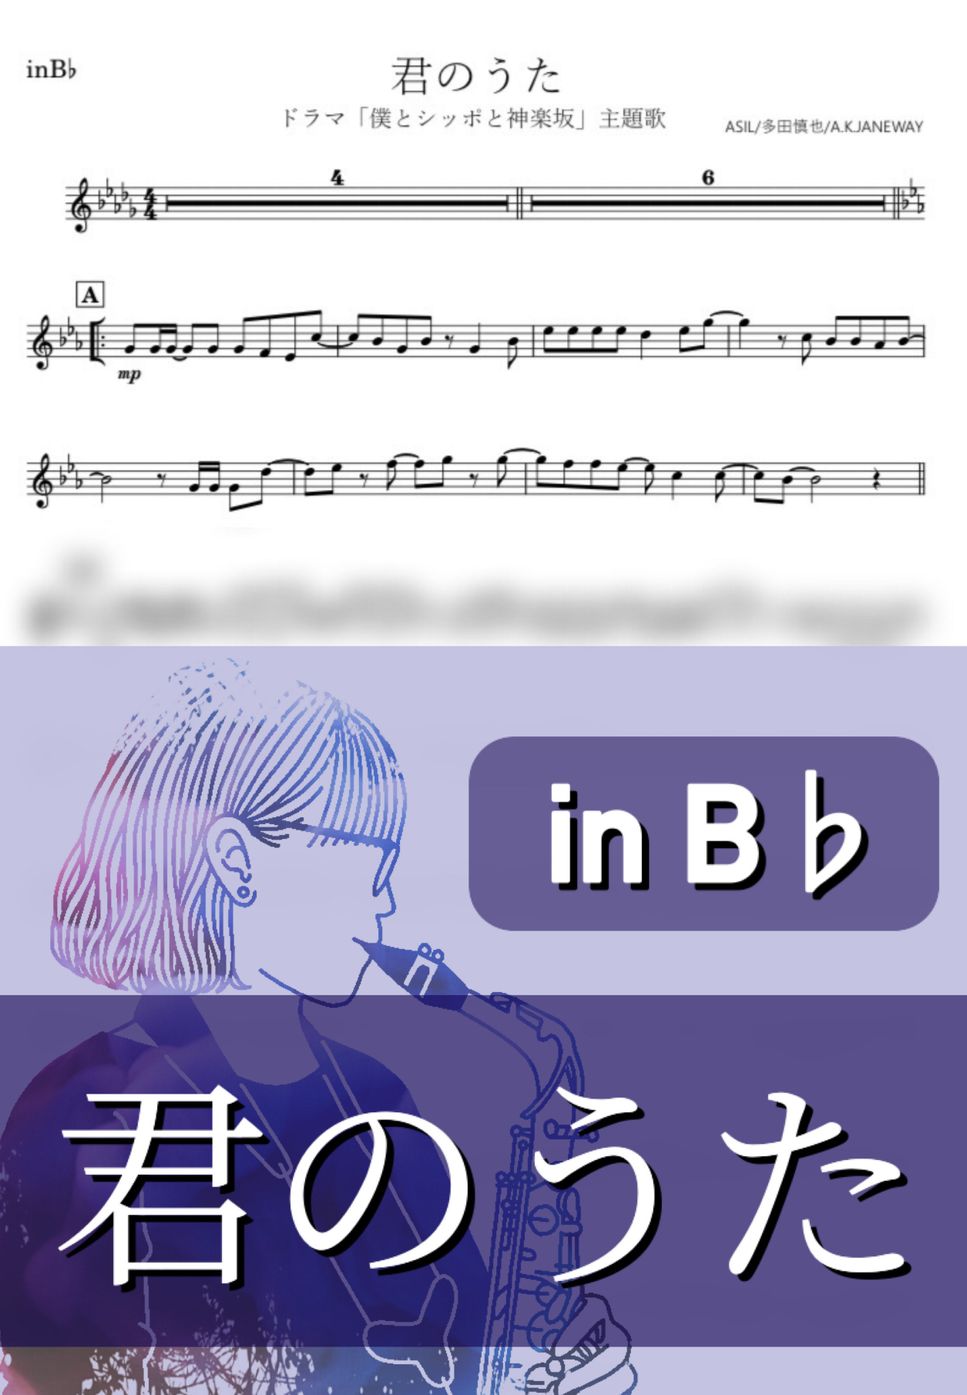 嵐 - 君のうた (B♭) by kanamusic